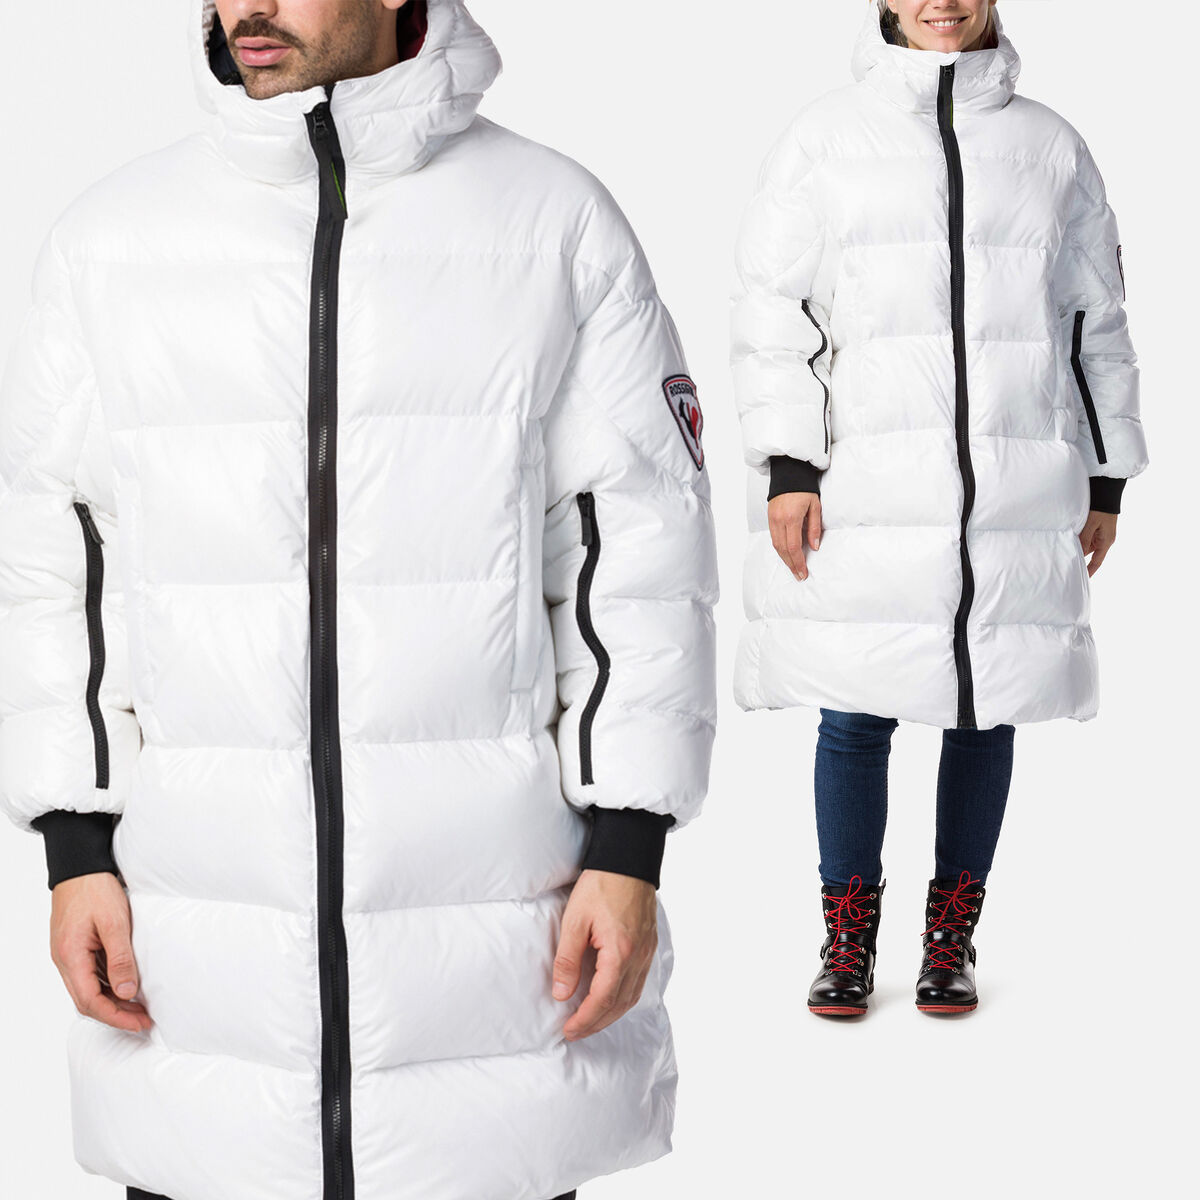 Unisex's Puffy Long Oversize Jacket